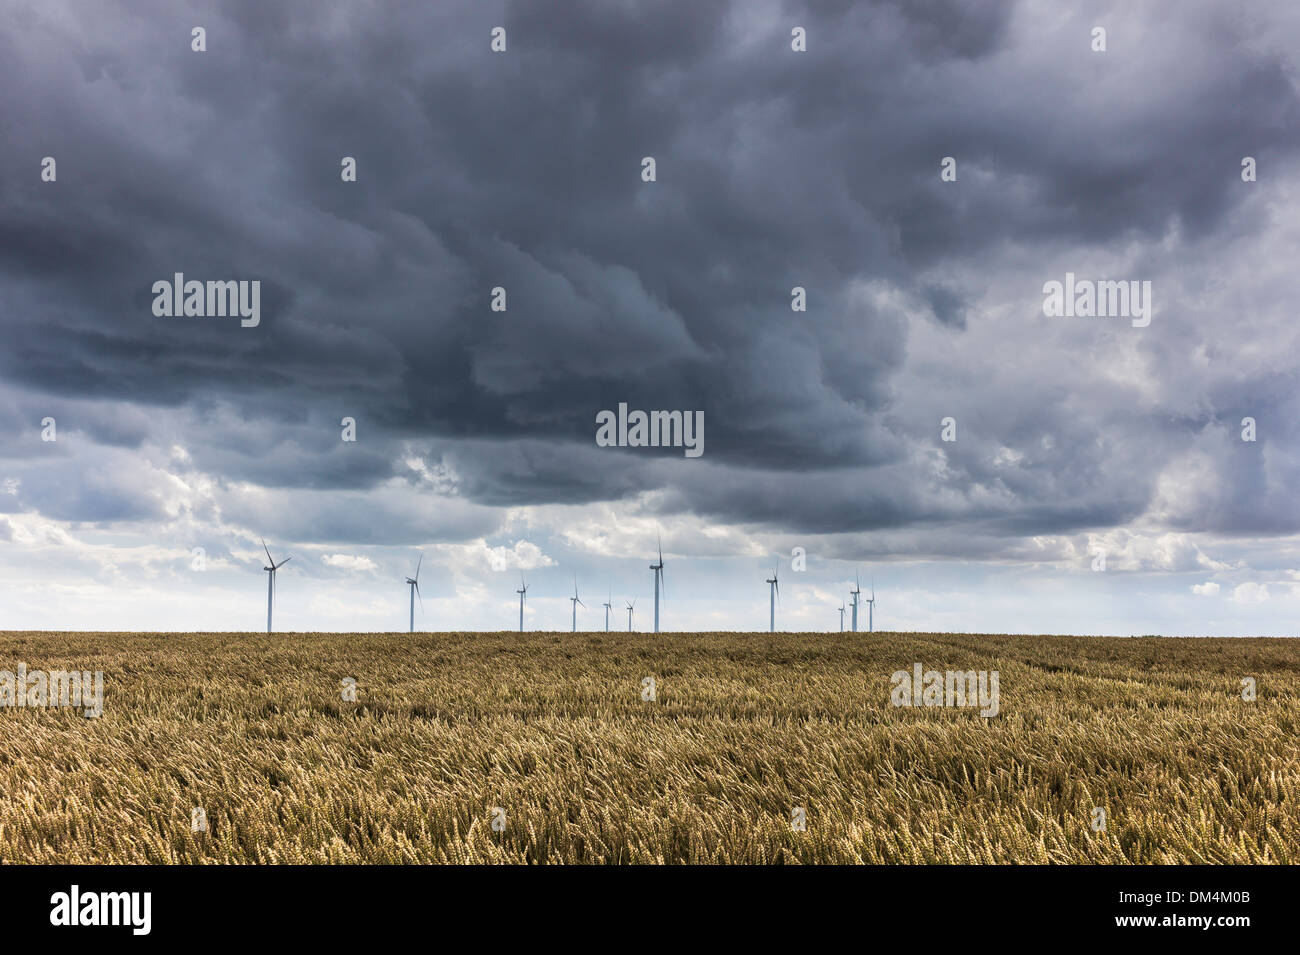 Aria di tempesta su turbine eoliche in un campo di grano di maturazione nei pressi di Beverley, East Riding of Yorkshire, Regno Unito. Foto Stock